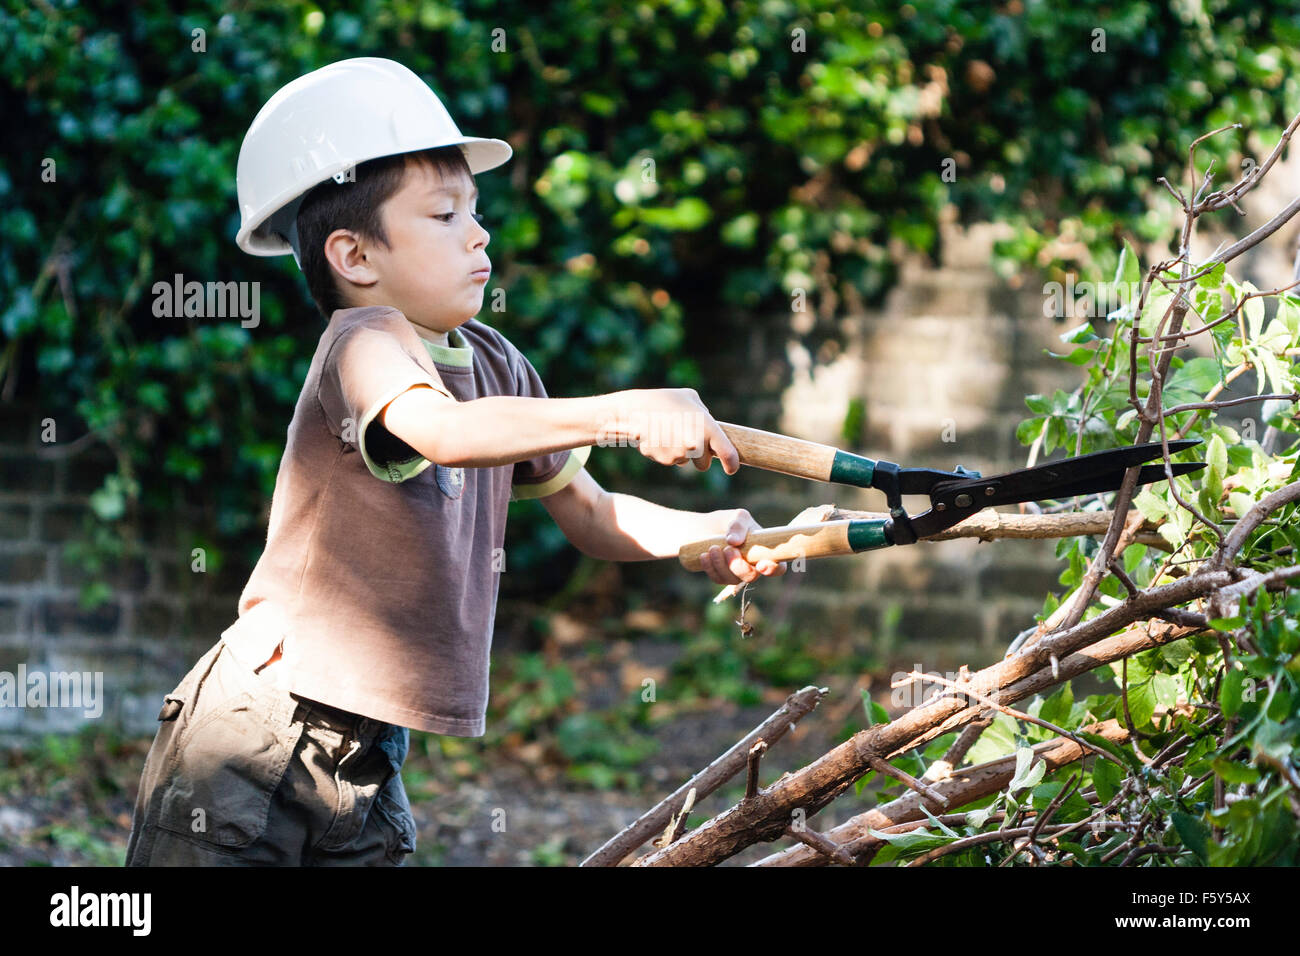 Bambino caucasico, boy, indossando di sicurezza bianca cappello e t-shirt, cercando di tagliare rami con grande giardino cesoie. Espressione seria. Foto Stock